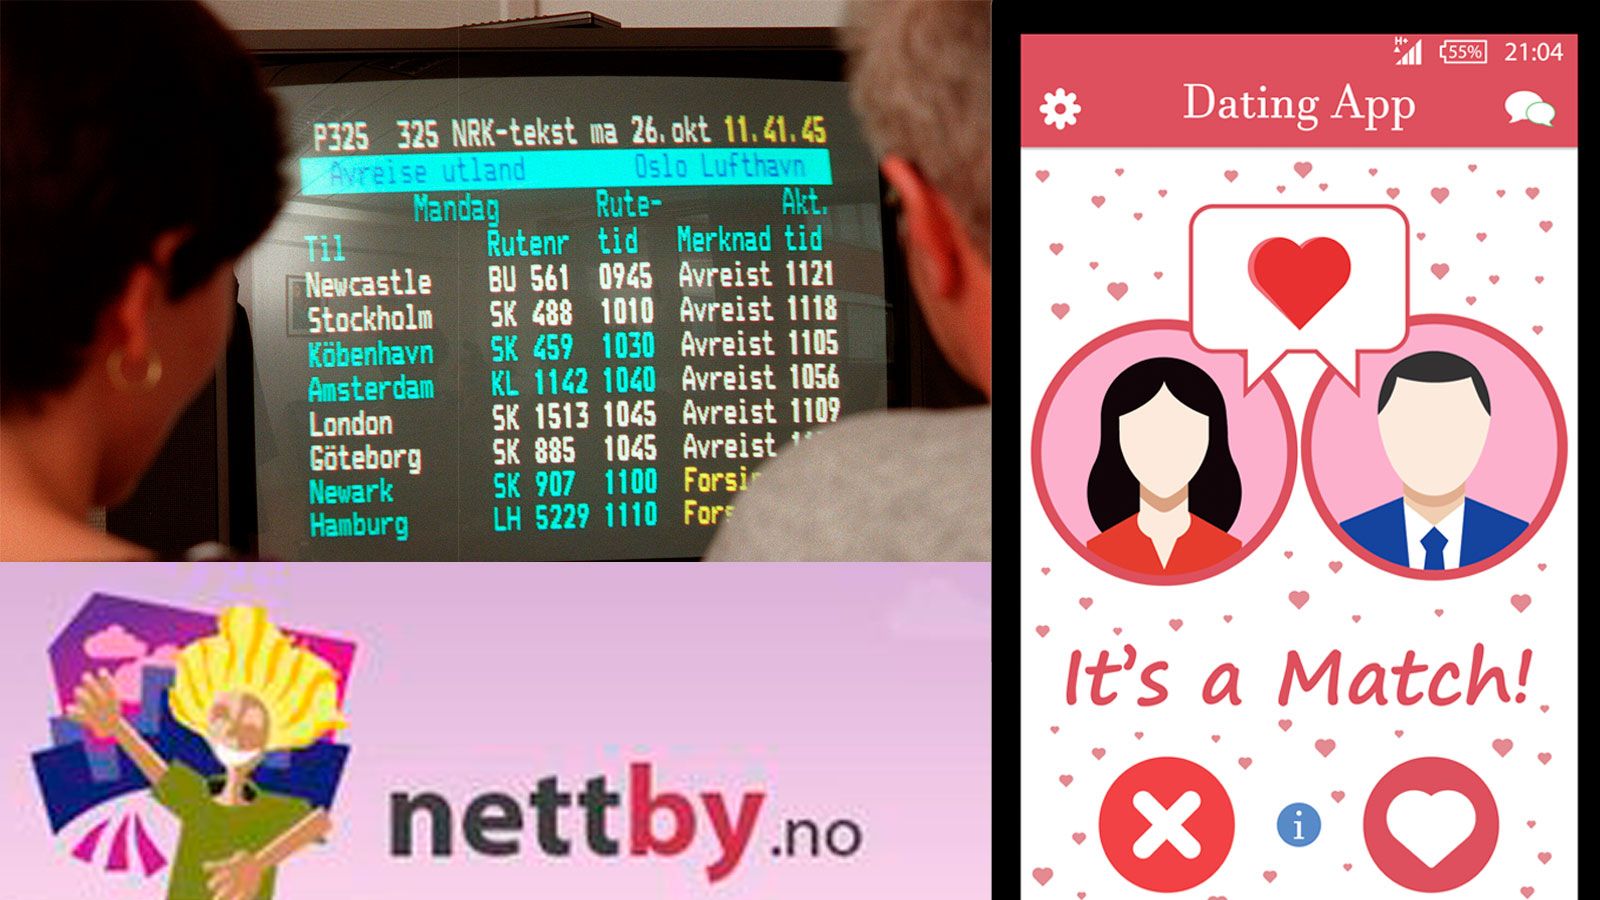 Tidligere chattet folk på tekst-TV, nå kan du få match på datingapper med folk innen 250 meters radius.   